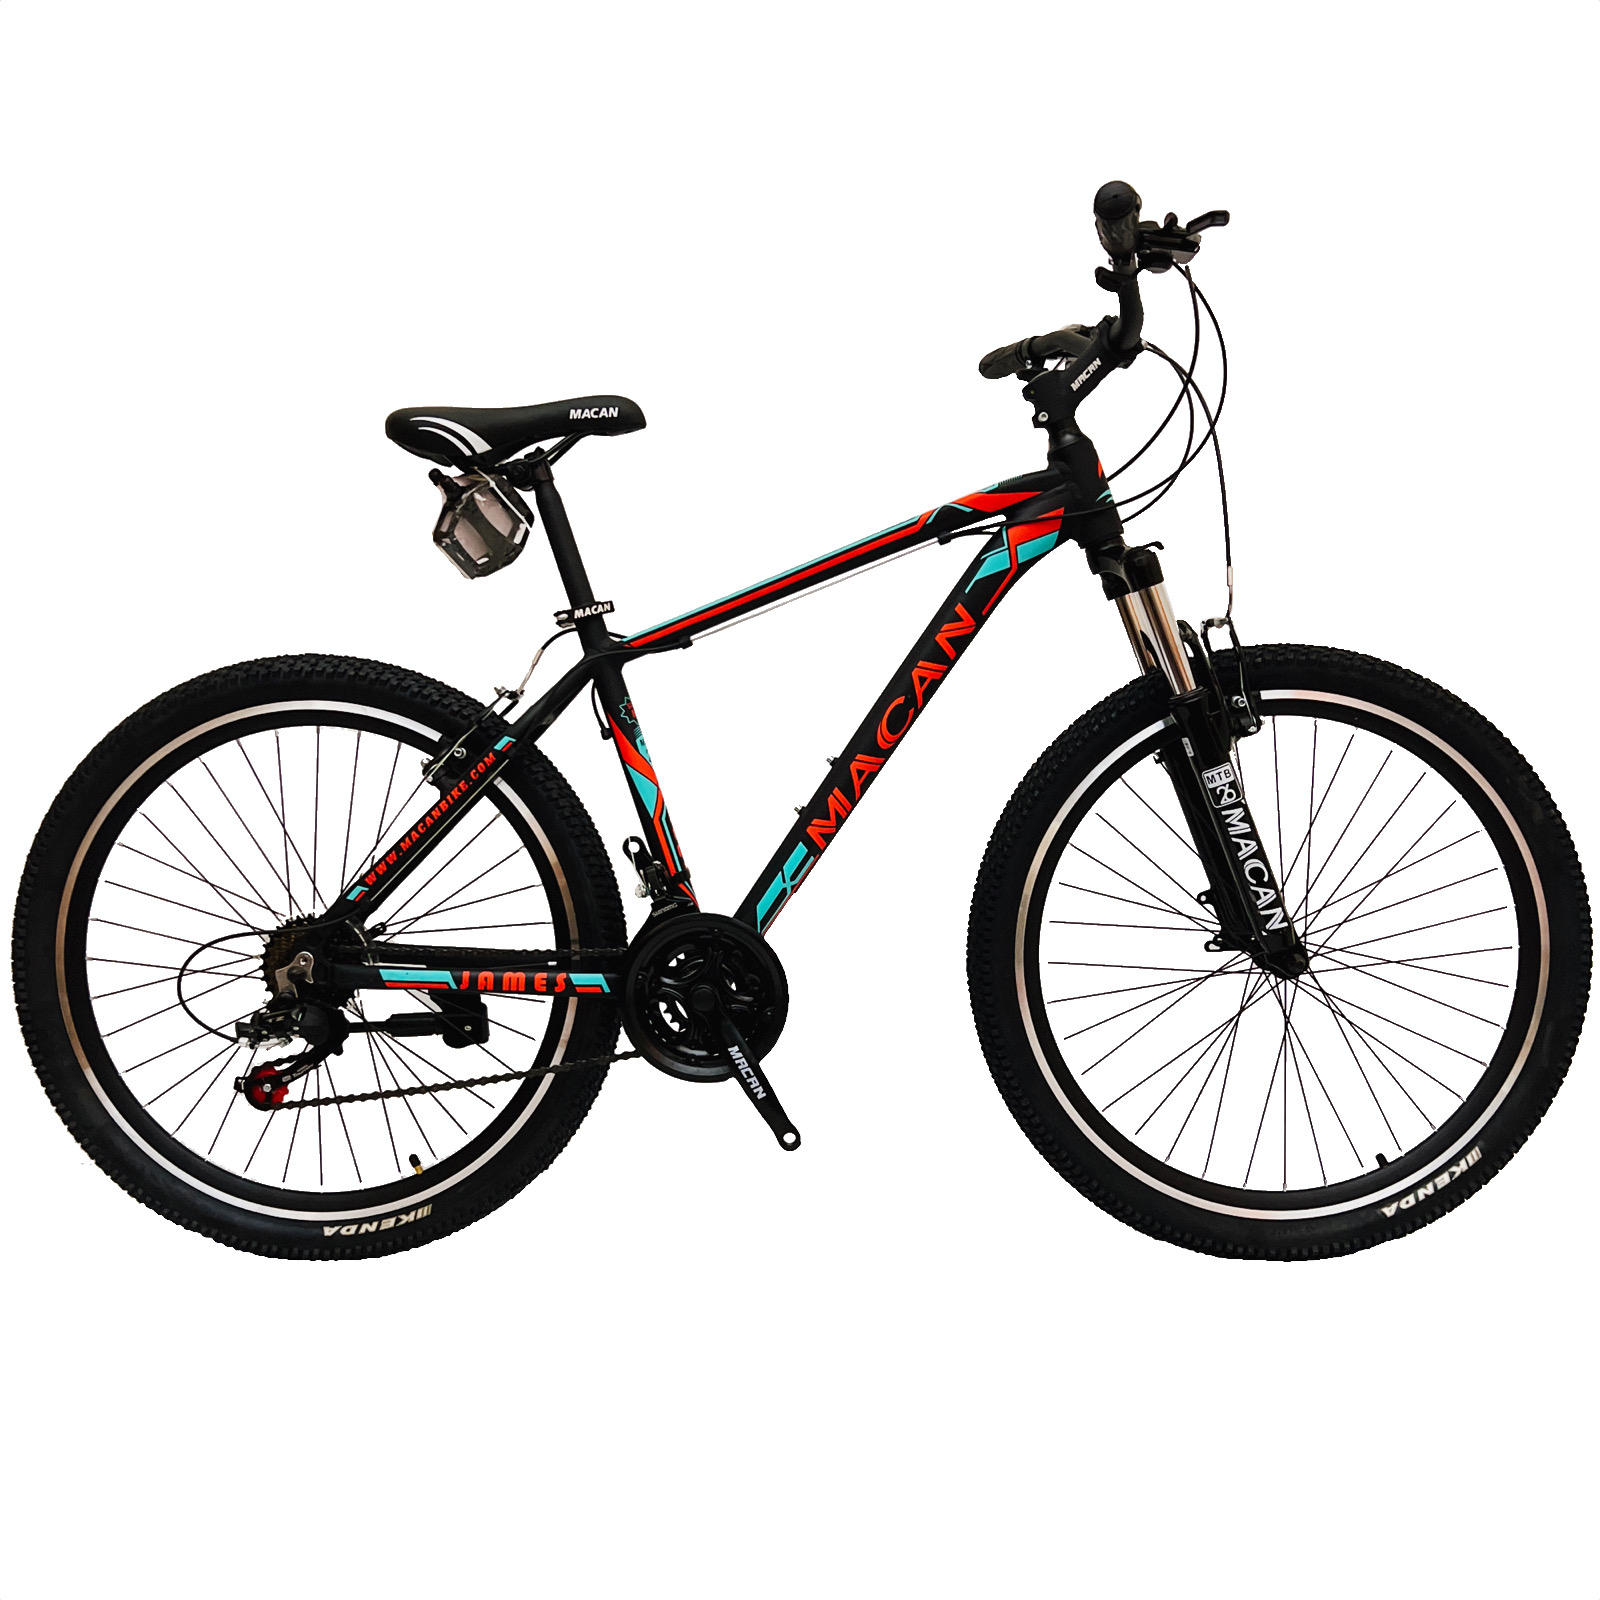 نکته خرید - قیمت روز دوچرخه کوهستان ماکان مدل آلومینیوم کد JAMES سایز 26 خرید